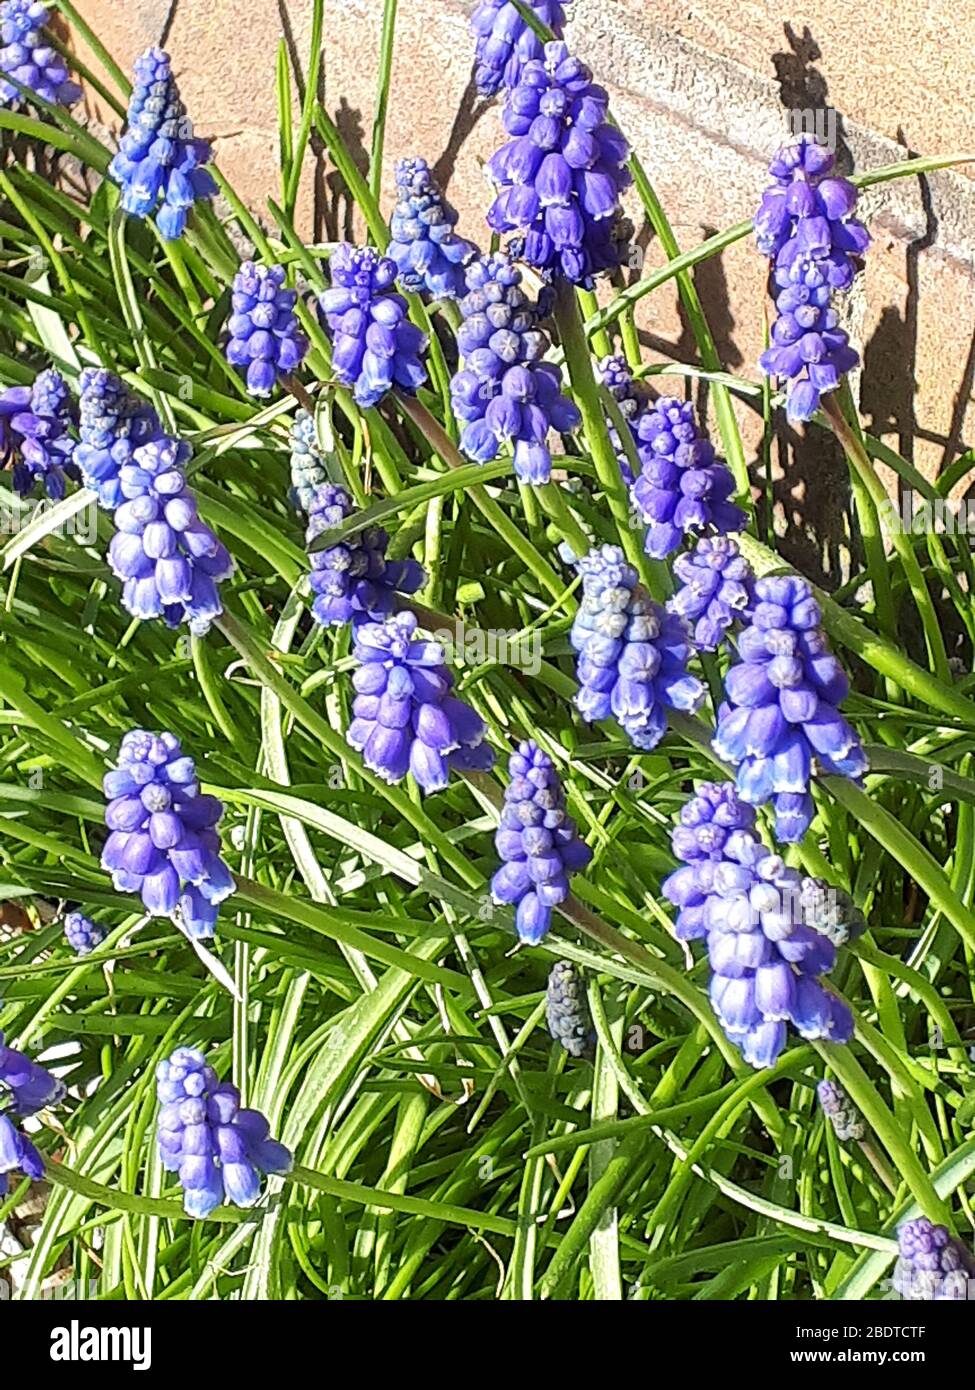 Muscari ou Grape jacinthe produisent des pics de fleurs denses, bleues et  en forme d'urne ressemblant à des grappes de raisins au printemps. Ils  forment de jolies colonies Photo Stock - Alamy